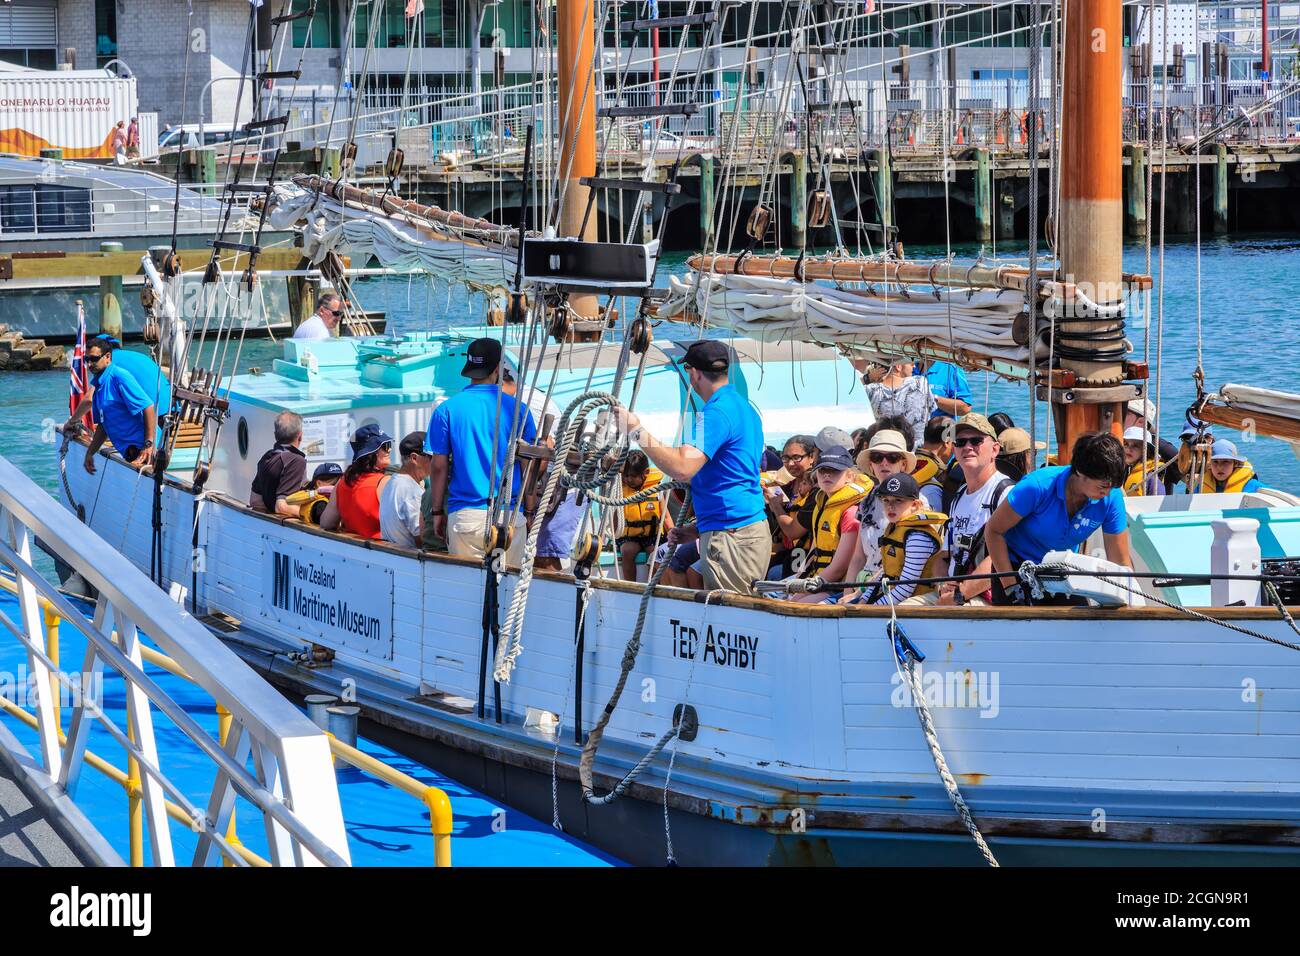 I passeggeri di una tradizionale nave a vela, la "Ted Ashby" del Museo Marittimo della Nuova Zelanda, si trovano in procinto di partire per una crociera nel porto. Auckland, Nuova Zelanda, 1/27/2019 Foto Stock